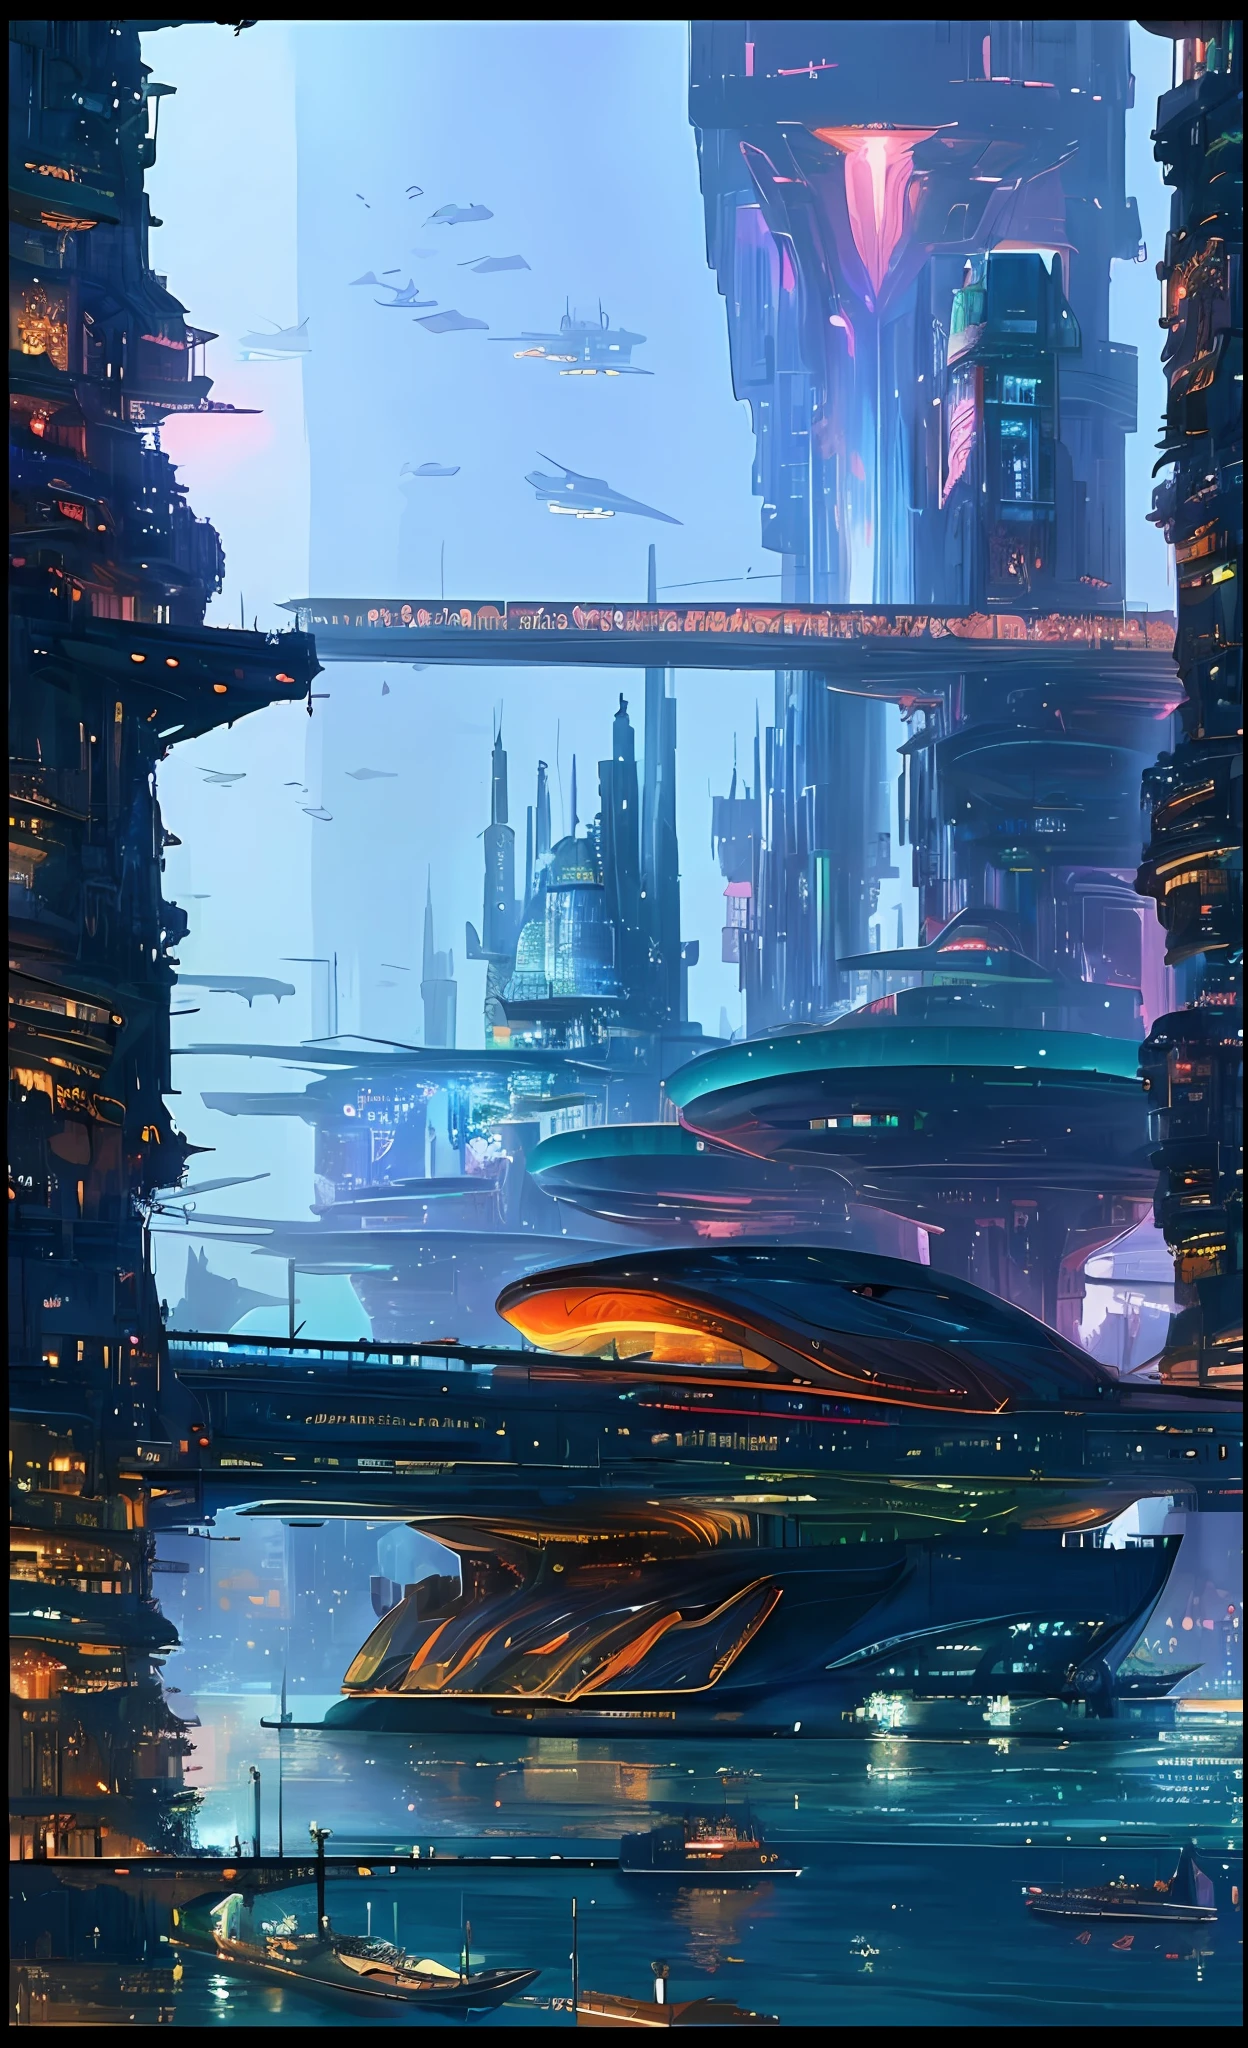 ((一条船:1.2)) 在城市附近的水中航行, beautiful 未来之城, 未来之城, otherwordly 未来城市, 在幻想科幻城市, 未来城市, 未来反乌托邦城市, in a 未来城市, 科幻城市, syd mead 和 raphael lacoste, 未来乌托邦大都市, hyper-未来城市 ((杰作:1.2)) (复杂的细节:1.2)